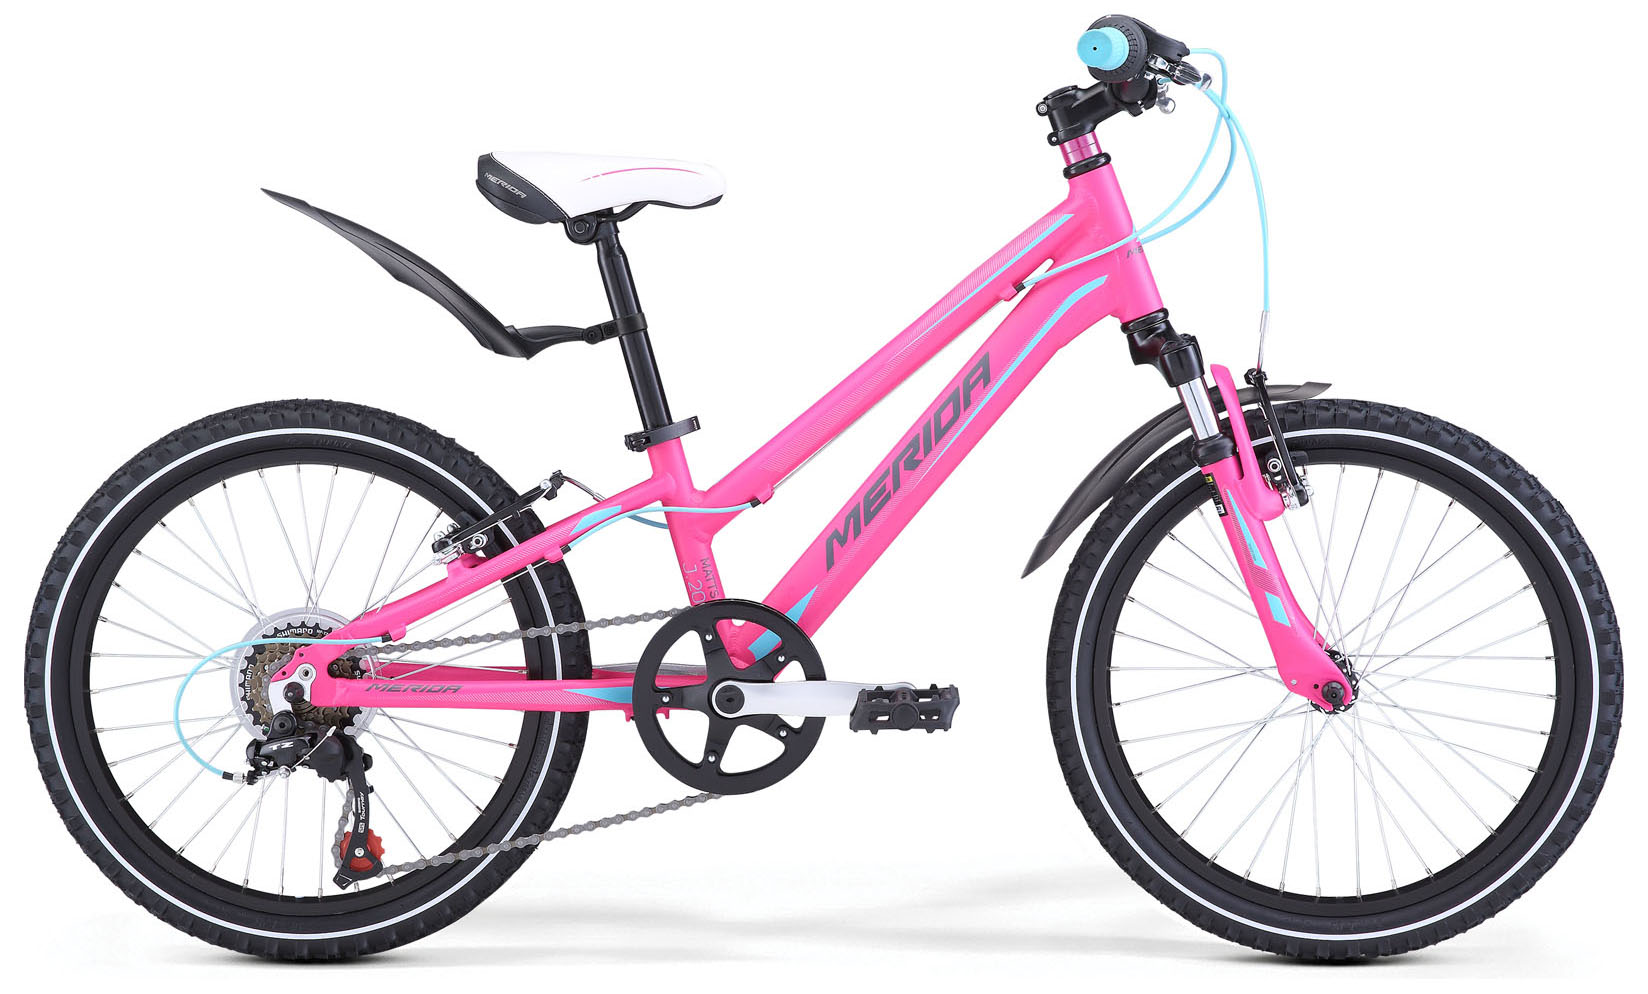  Отзывы о Детском велосипеде Merida Matts J20 Girl 2019